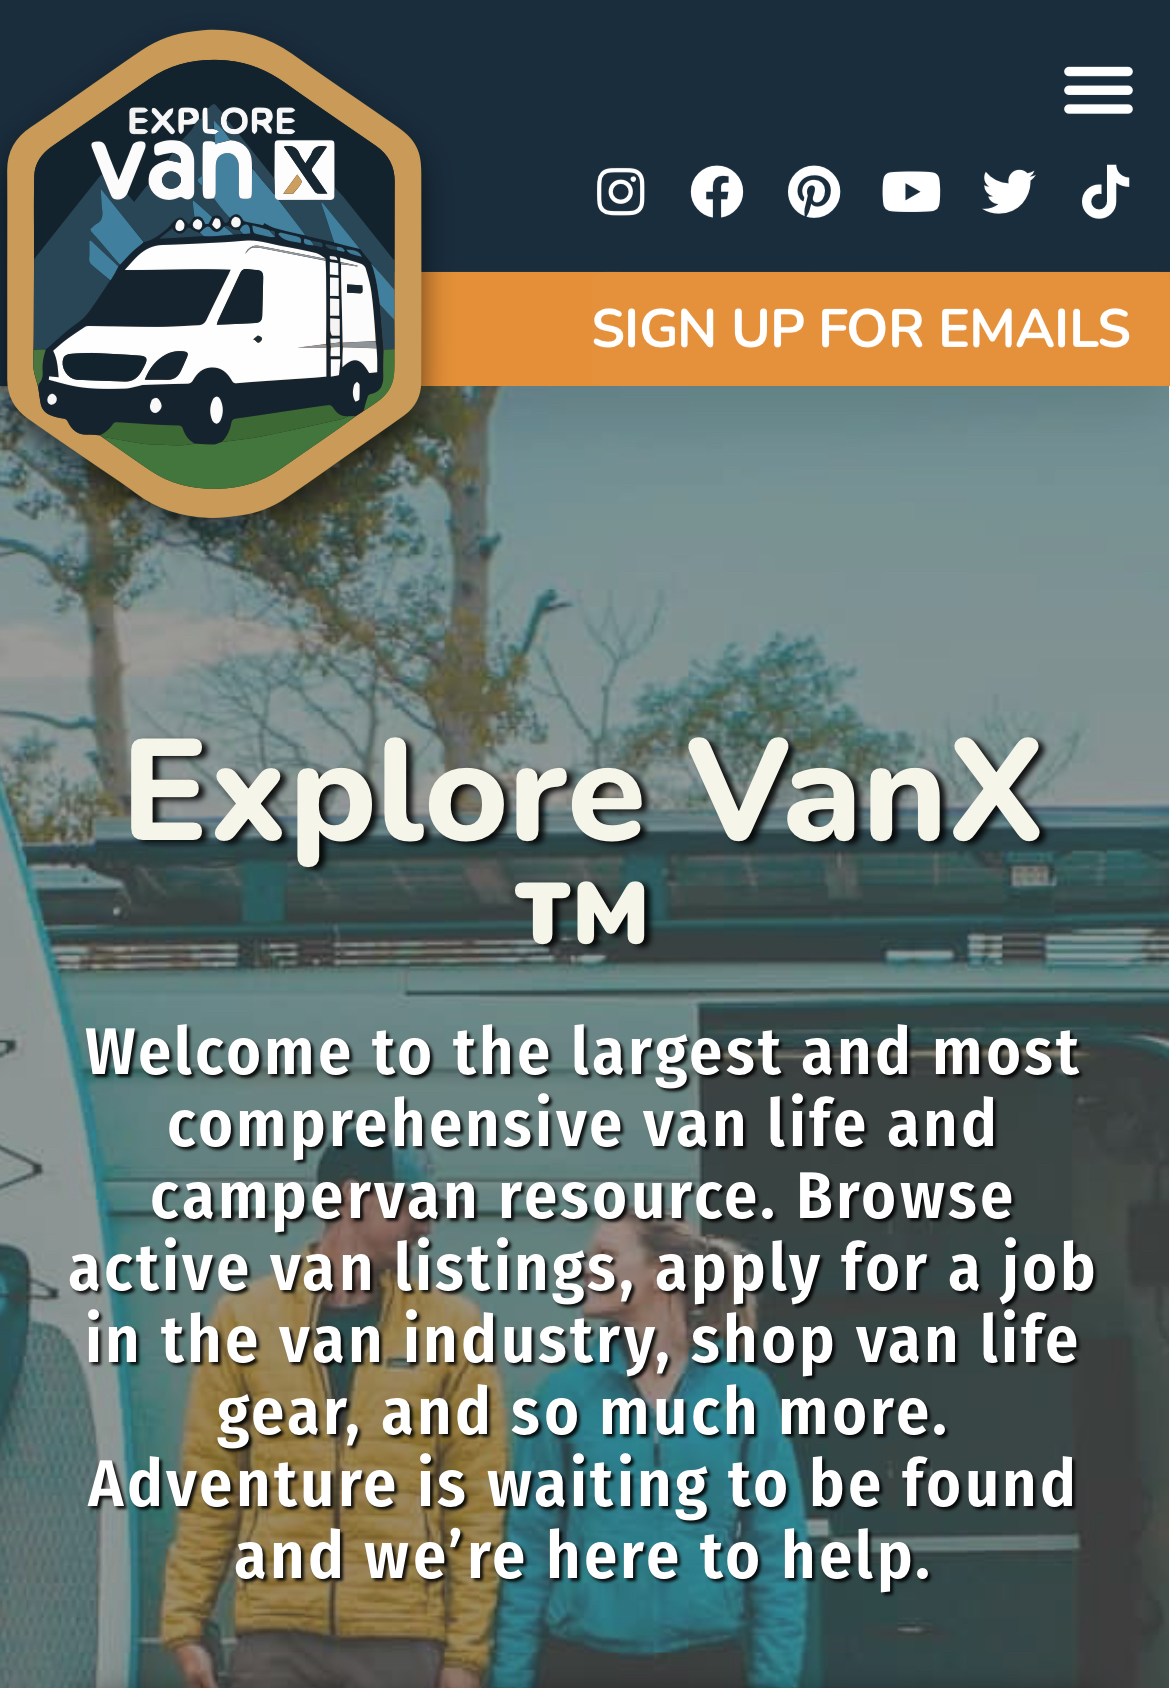 Van Life Gear Company. – Van Life Gear Company LLC